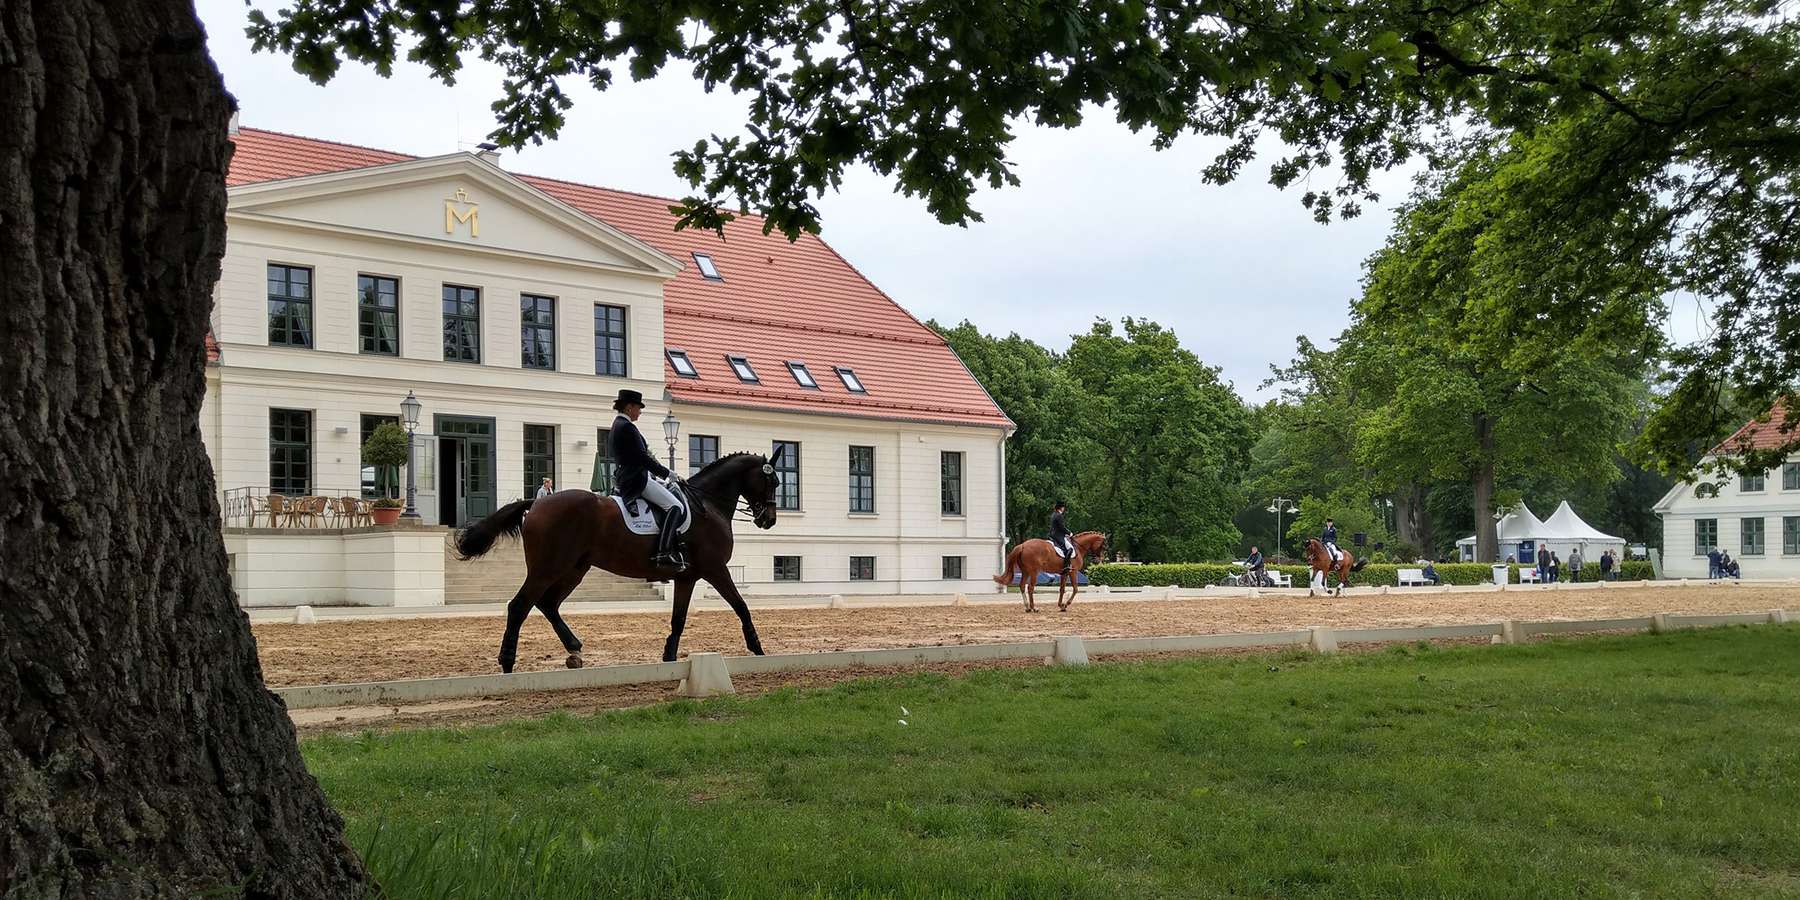 Auf dem Rücken der Pferde liegt das Glück dieser Erde - hier zum Beispiel im Landgestüt Redefin. © 2021 SBL Schwerin